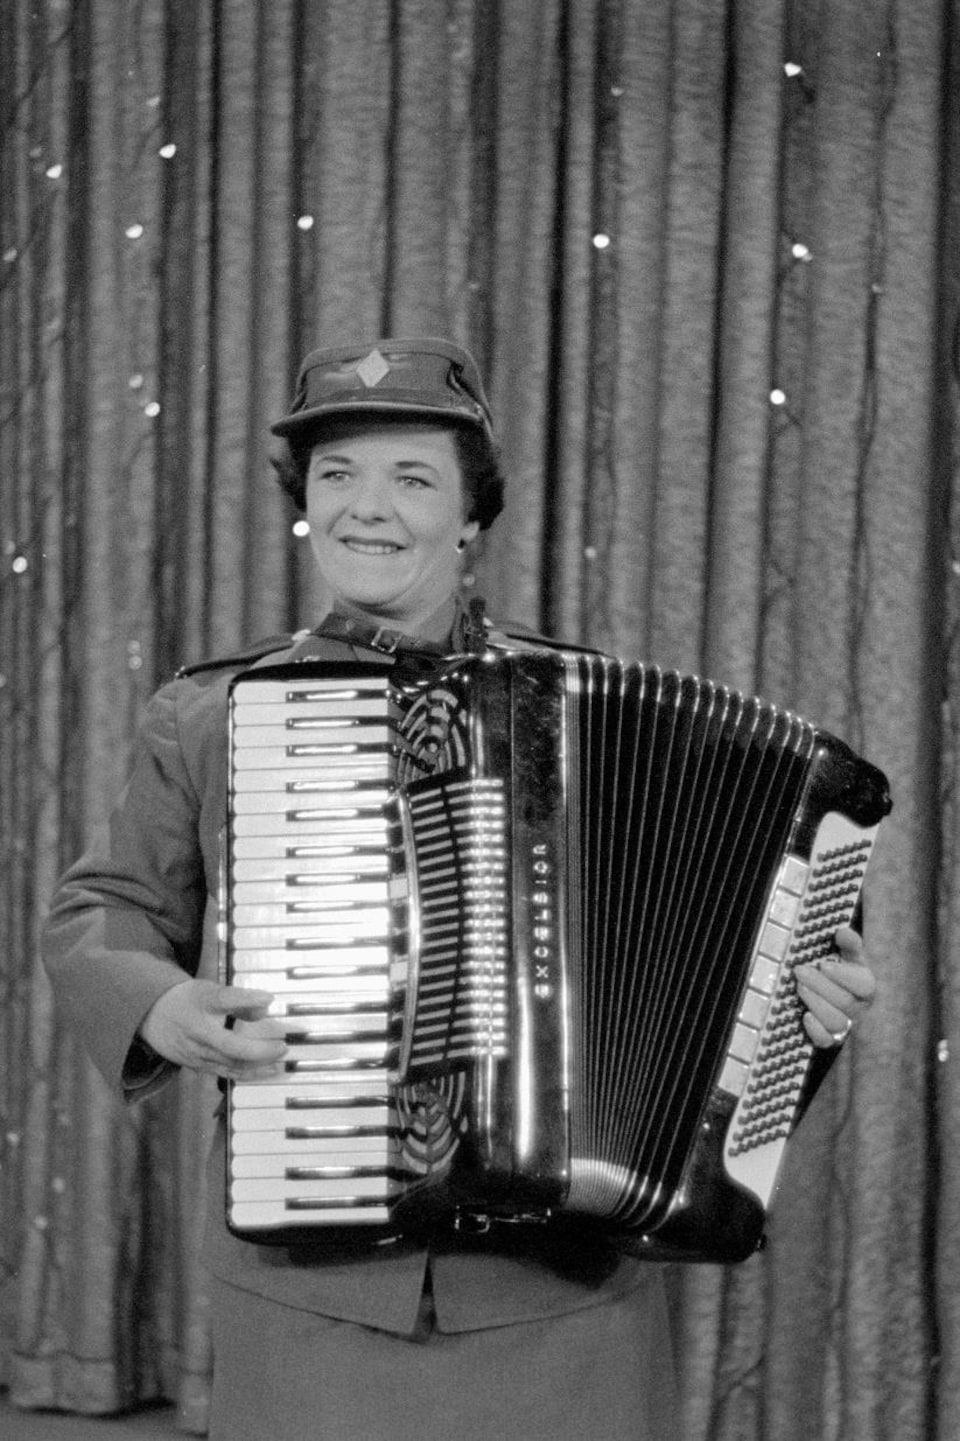 Une accordéoniste en uniforme joue de son instrument en souriant sur une scène avec un rideau pailleté.